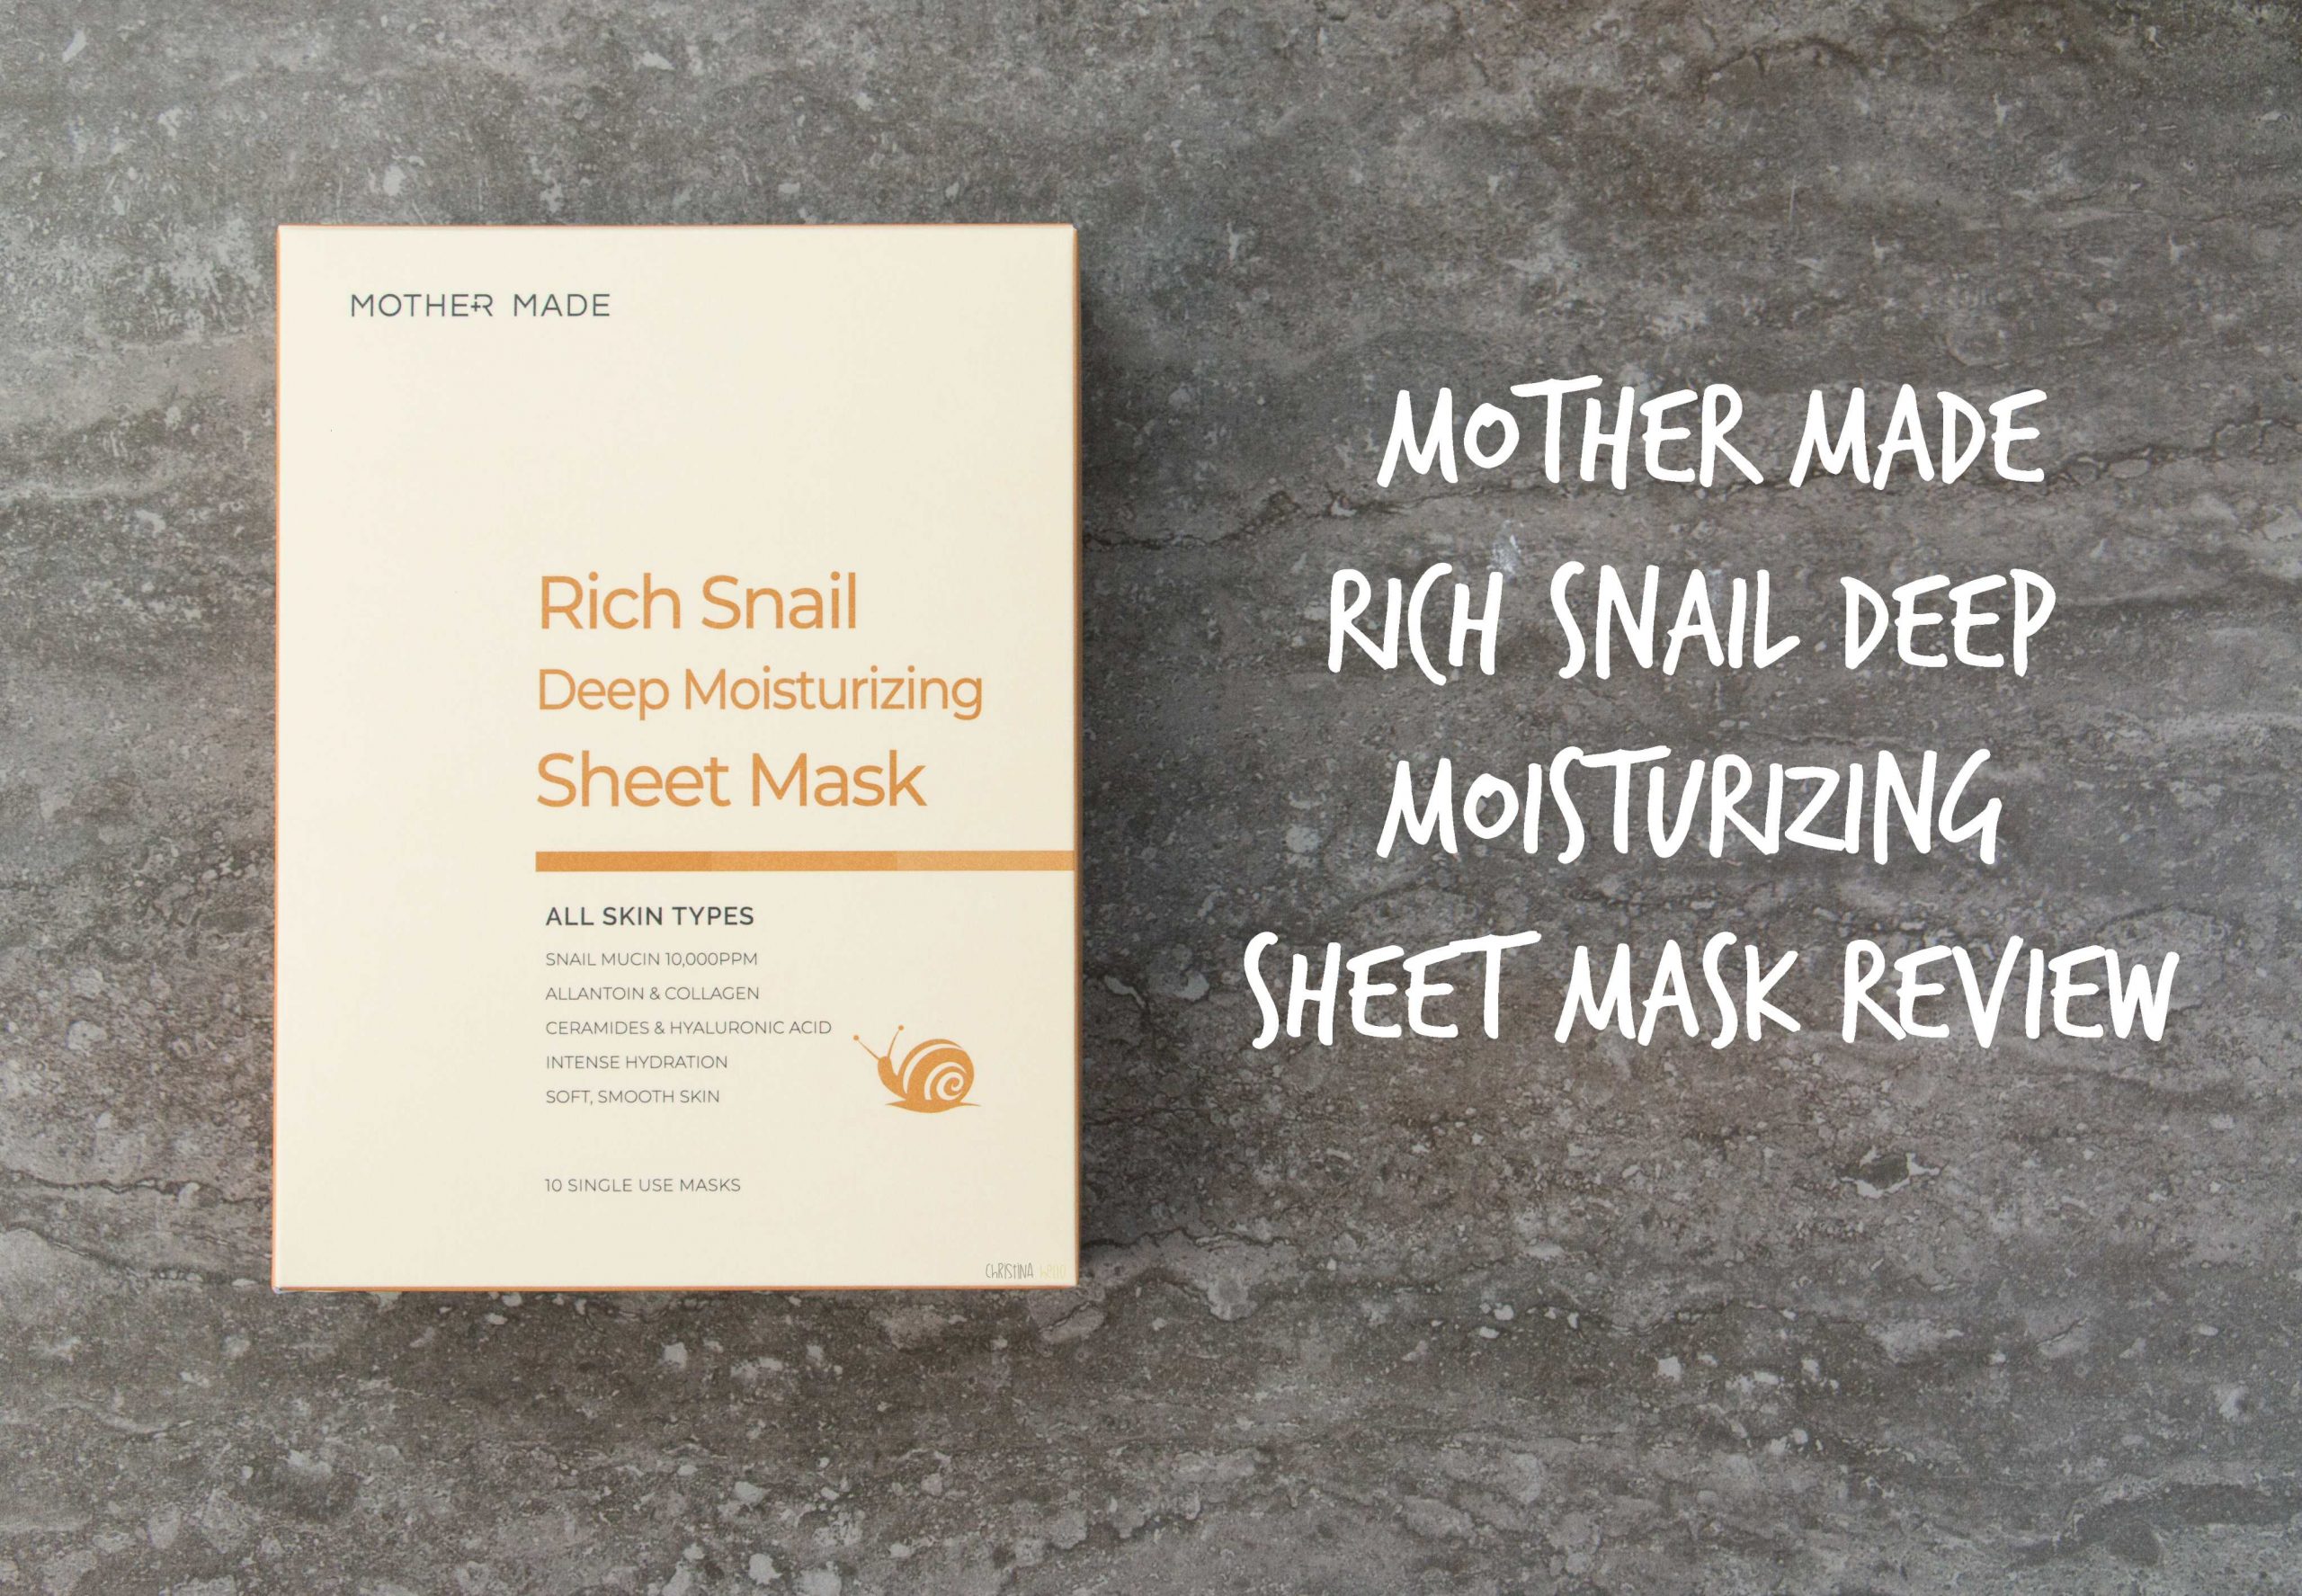 Mother made rich snail deep moisturizing sheet mask review